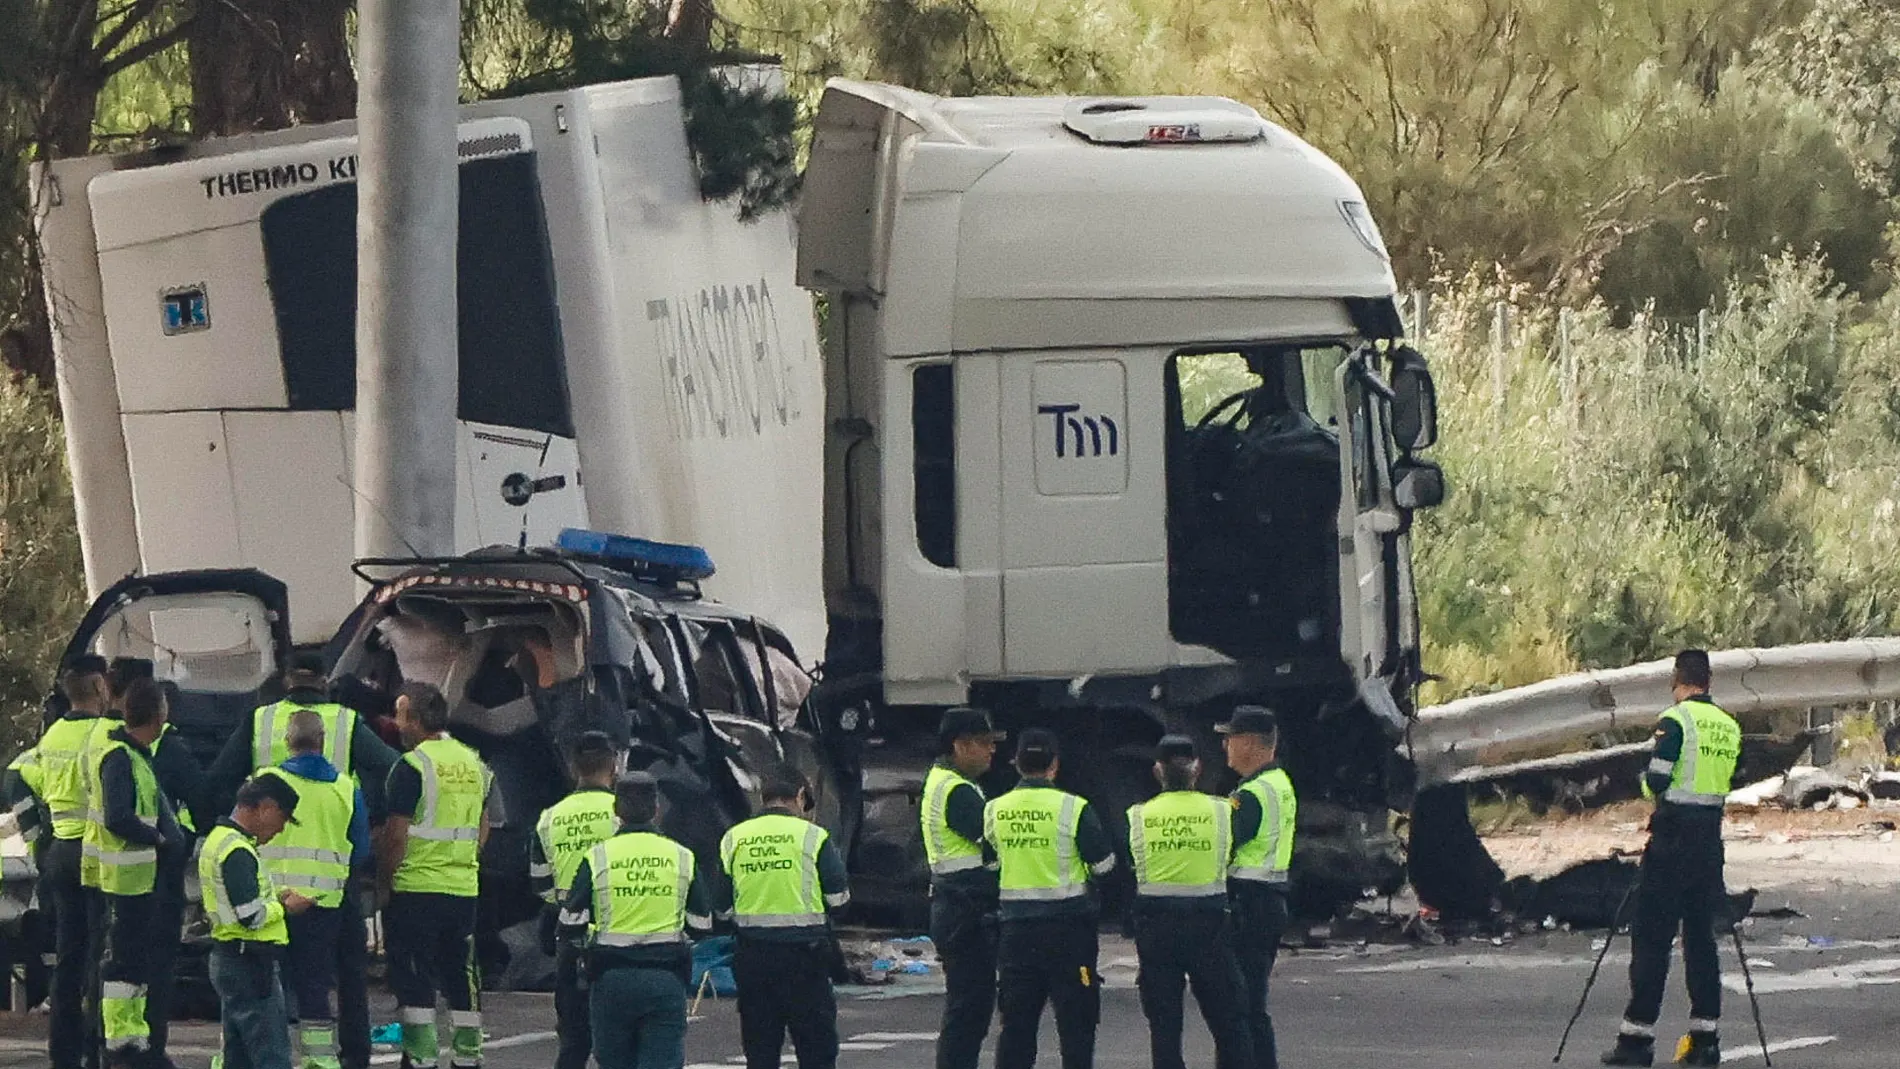 El camión articulado que arrolló mortalmente a seis personas